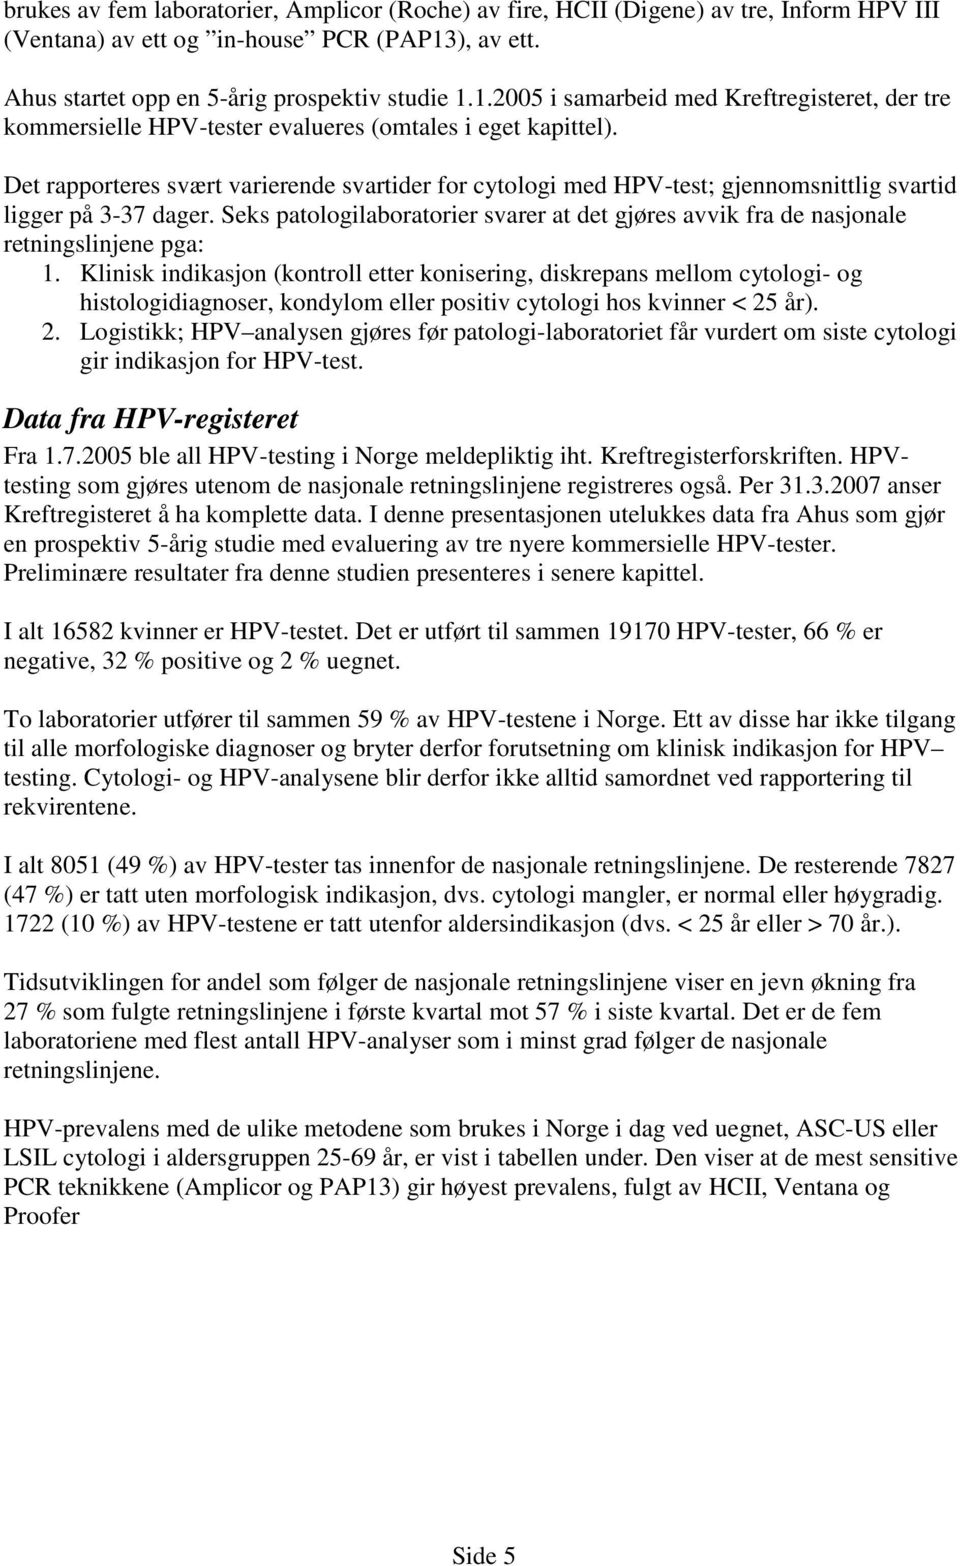 Det rapporteres svært varierende svartider for cytologi med HPV-test; gjennomsnittlig svartid ligger på 3-37 dager.